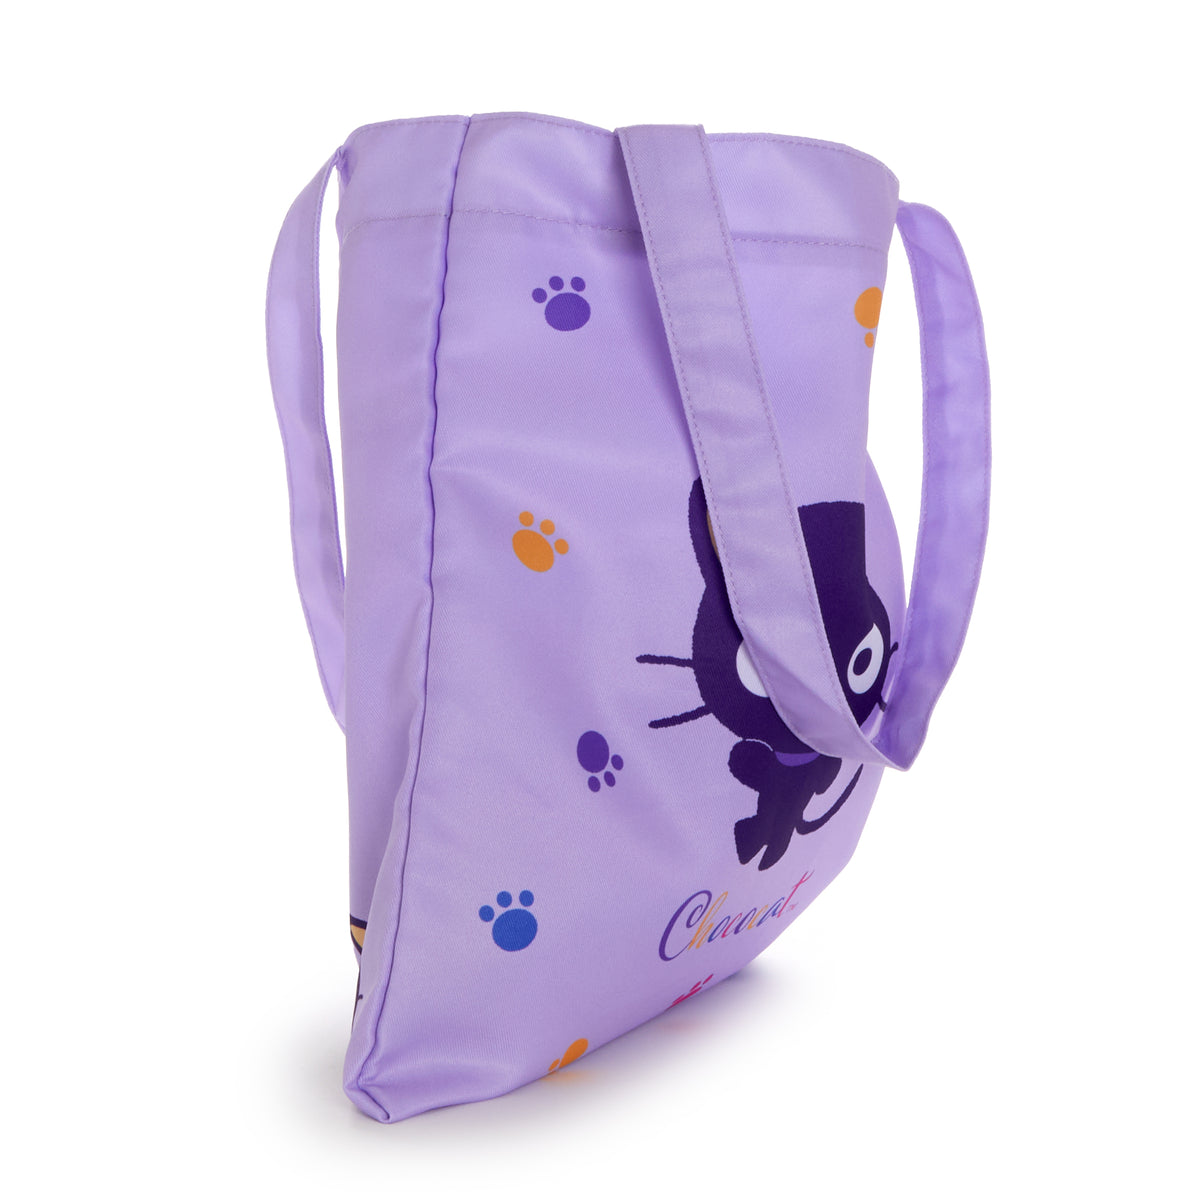 Chococat Tote Bag (Purple Wave Series) Bags NAKAJIMA CORPORATION   